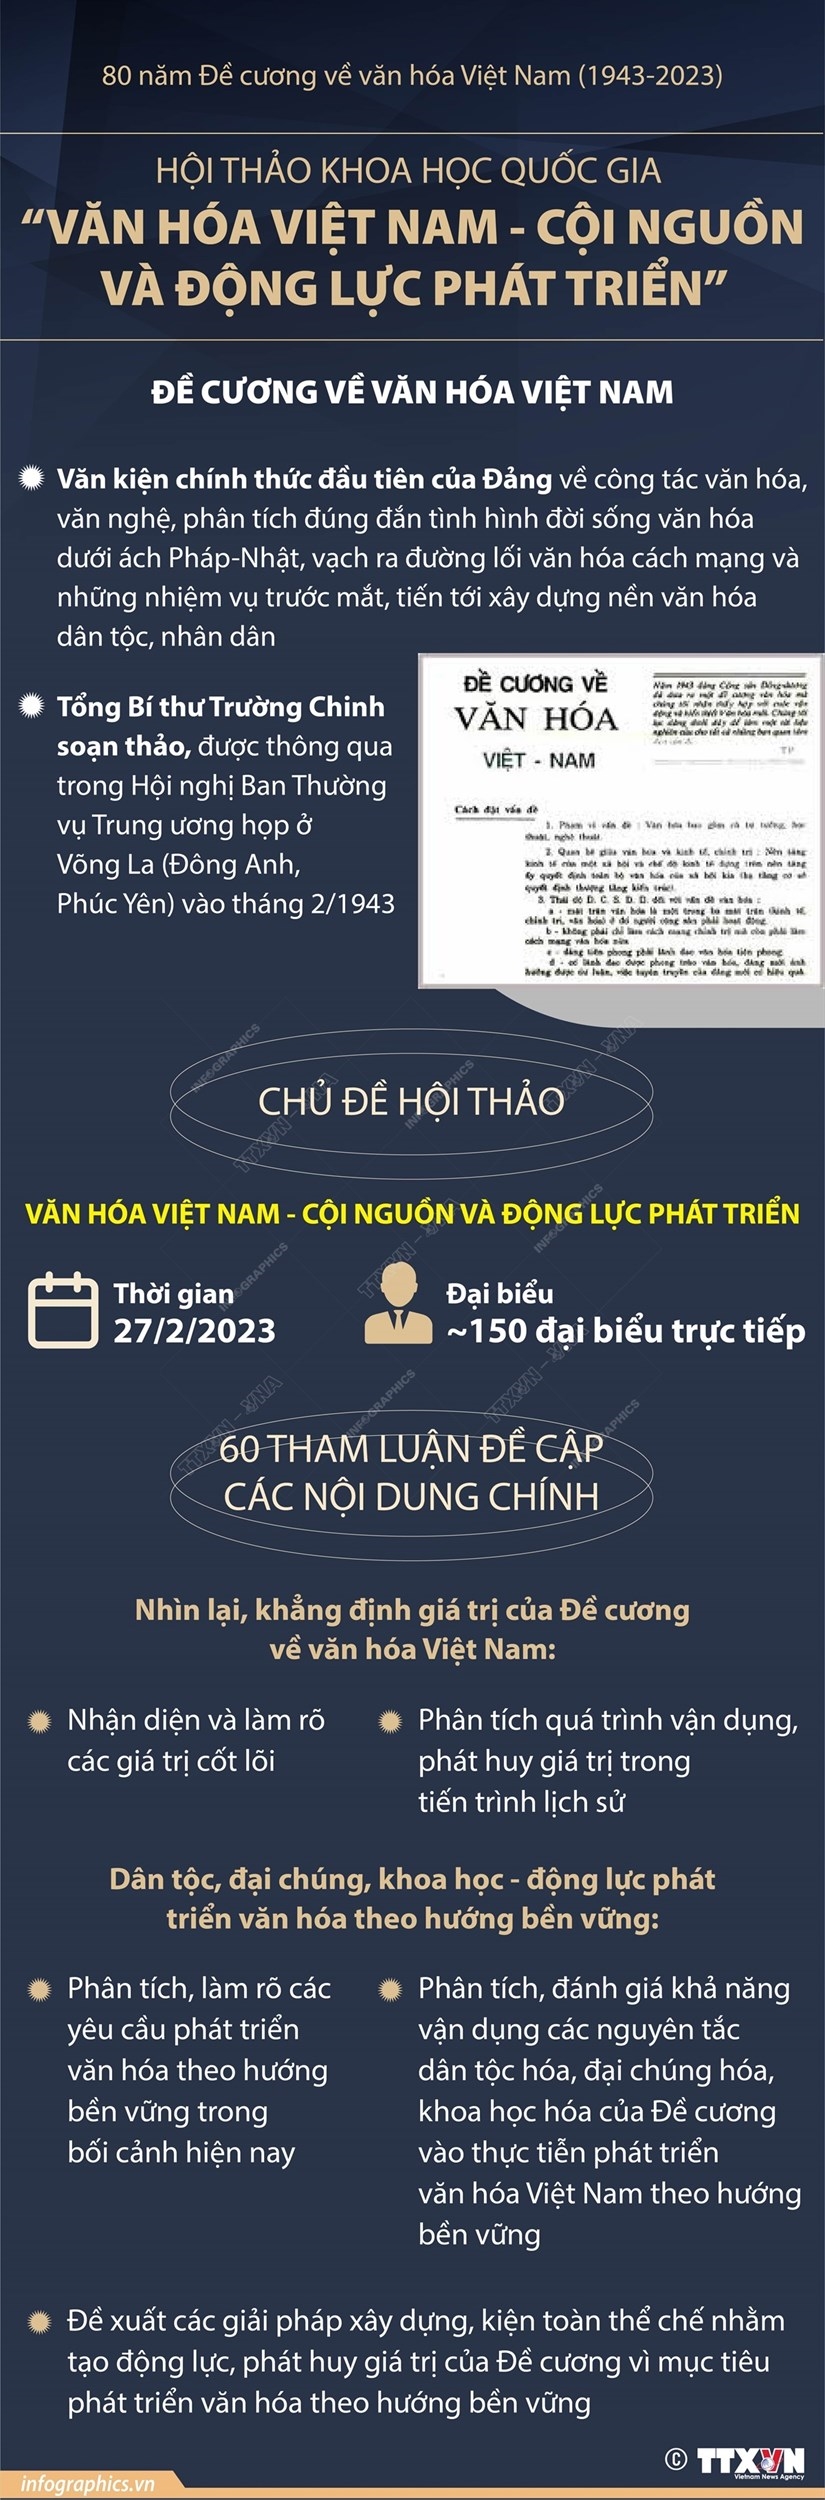 (DẪN NGUỒN) Nhiều hoạt động chào mừng 80 năm đề cương văn hóa Việt Nam